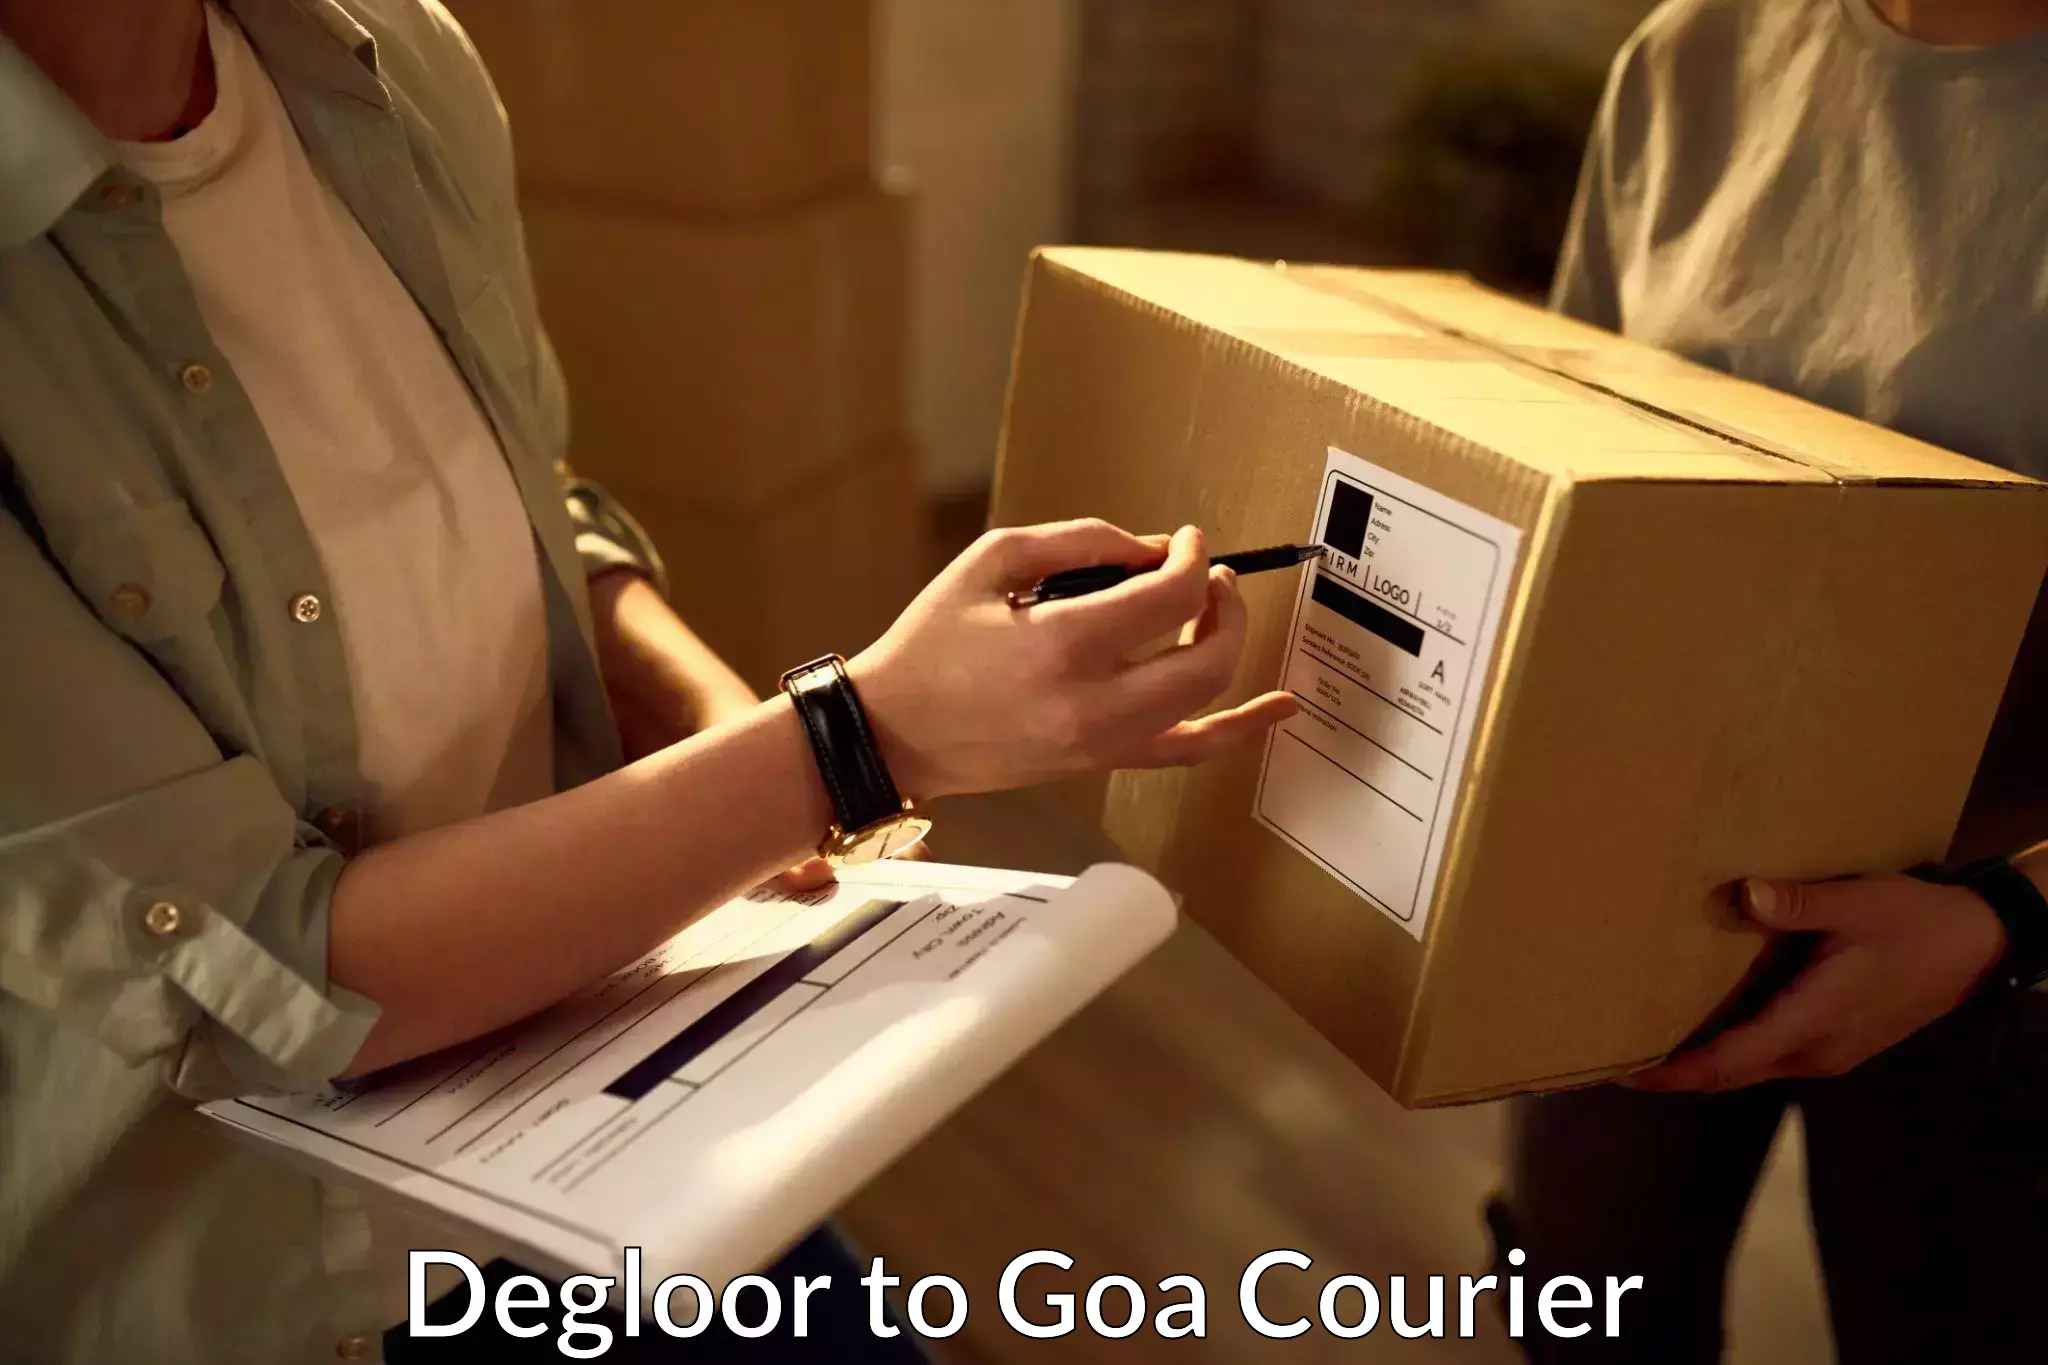 Pharmaceutical courier Degloor to Goa